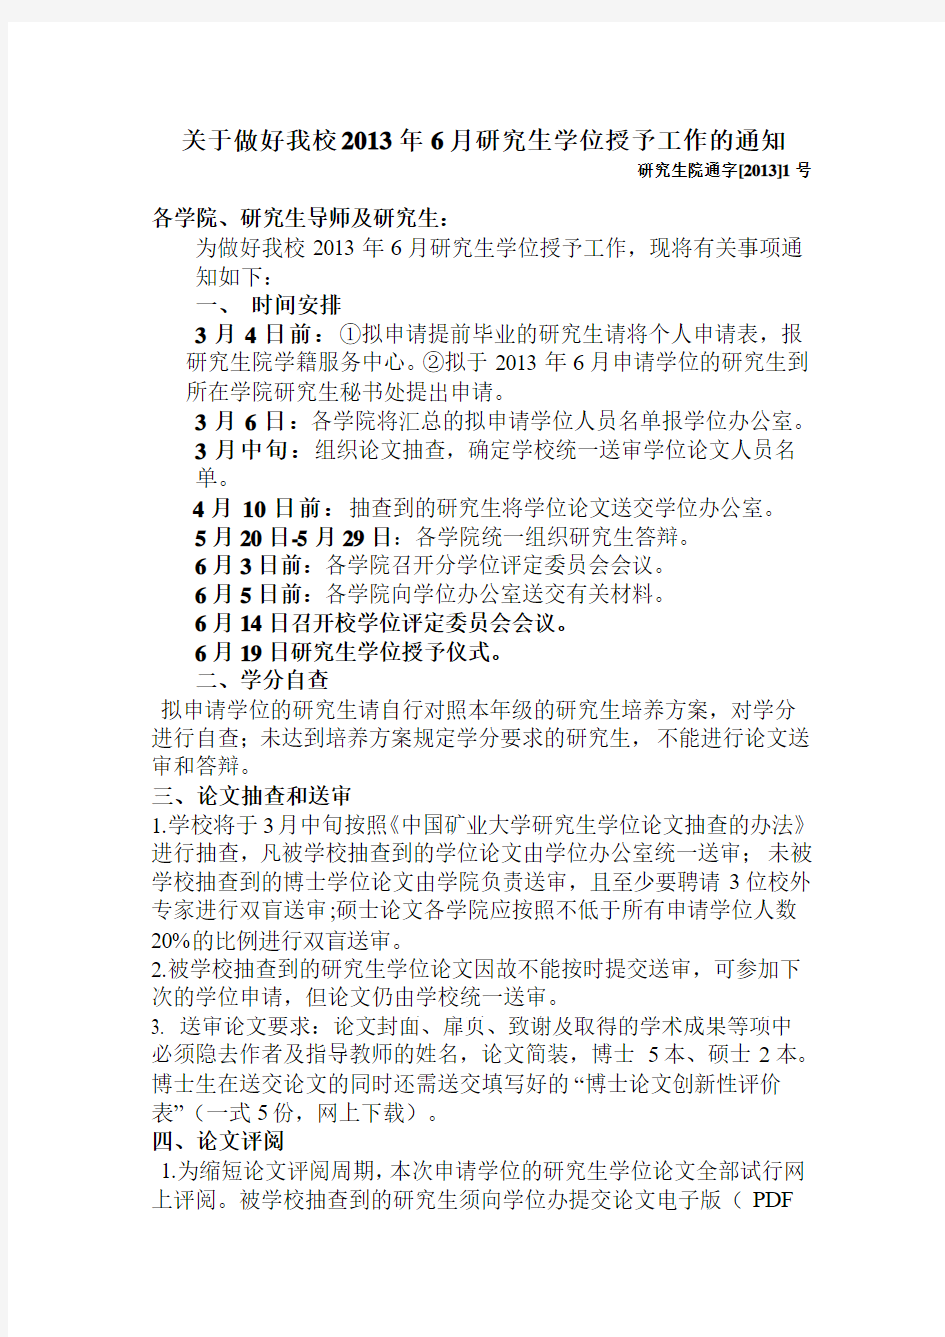 中国矿业大学研究生学位授予工作的通知